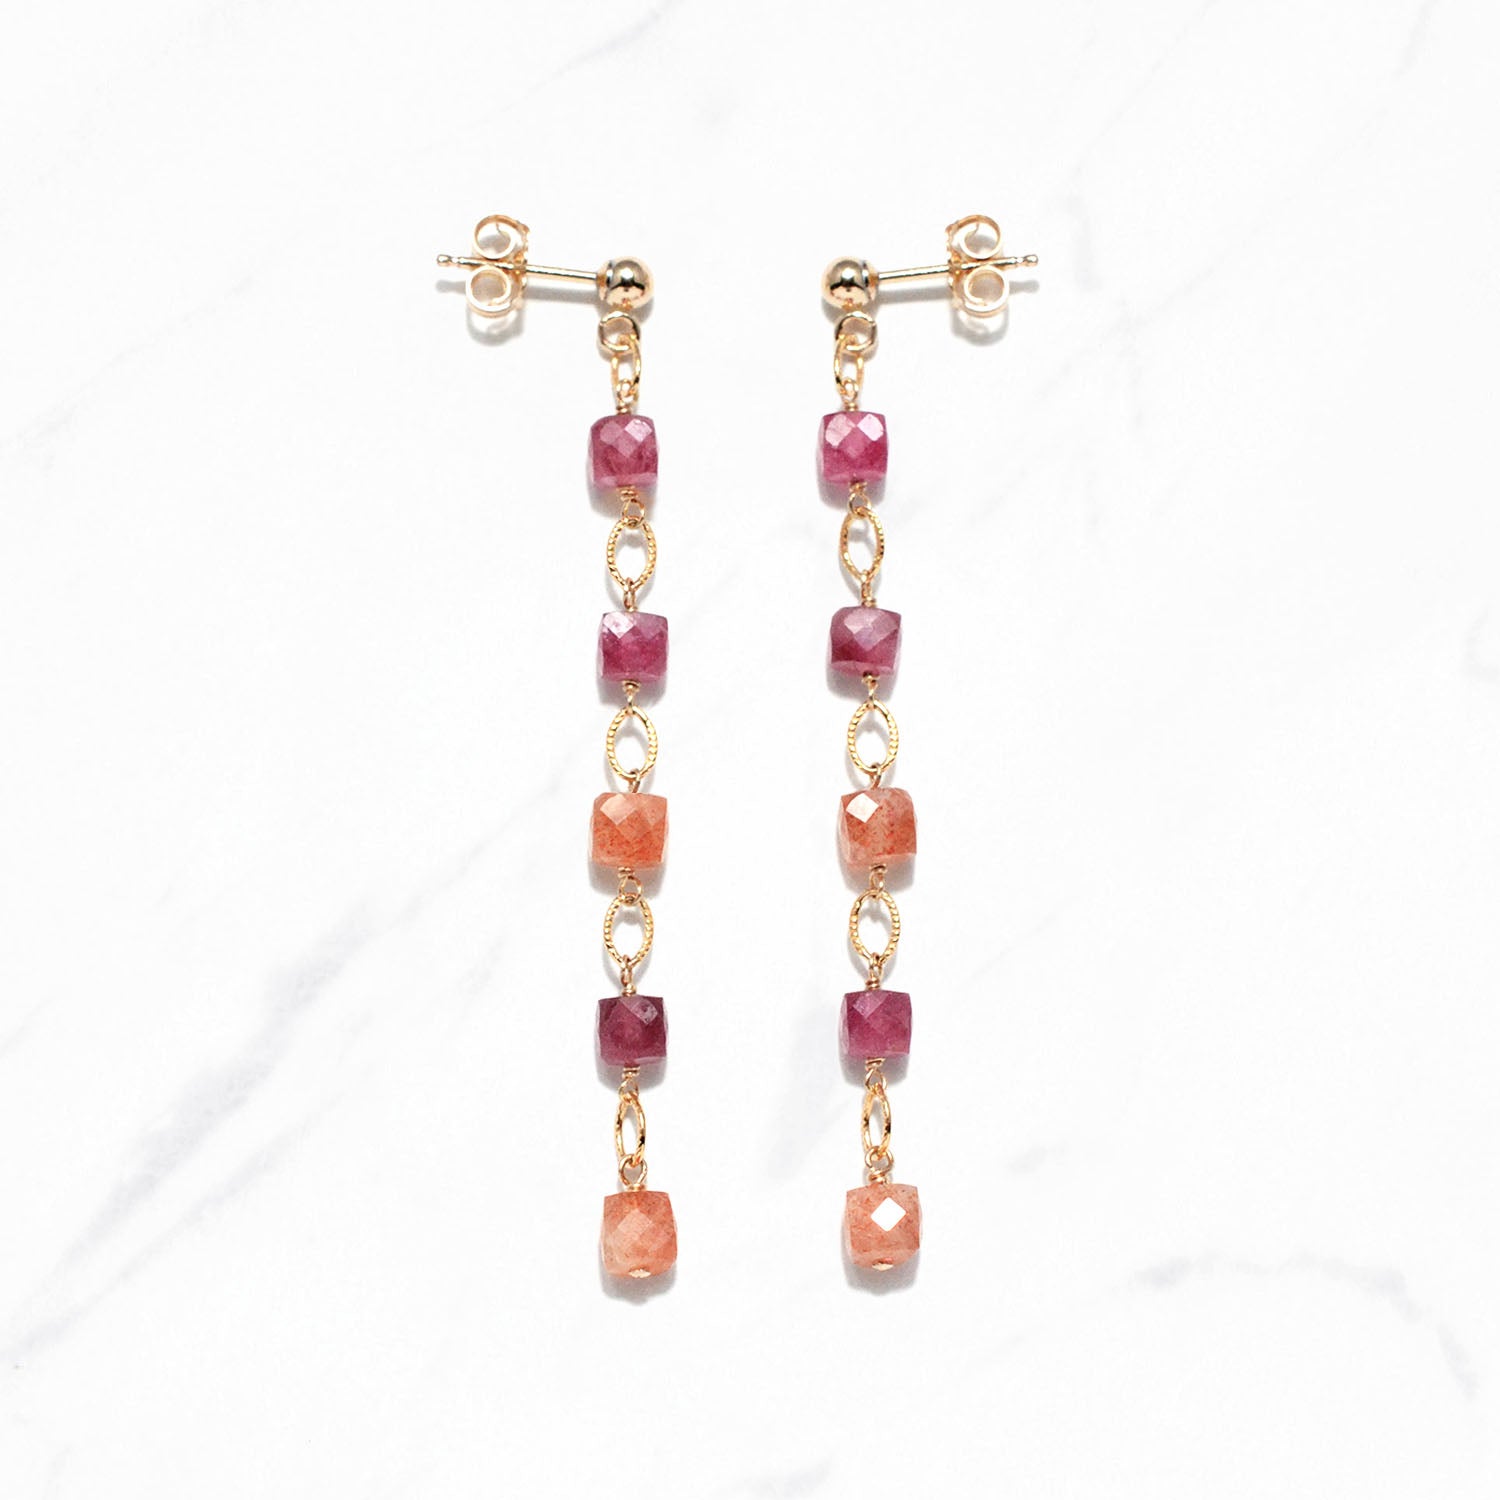 Colorful Gemstones Dangling Earrings (Berries)